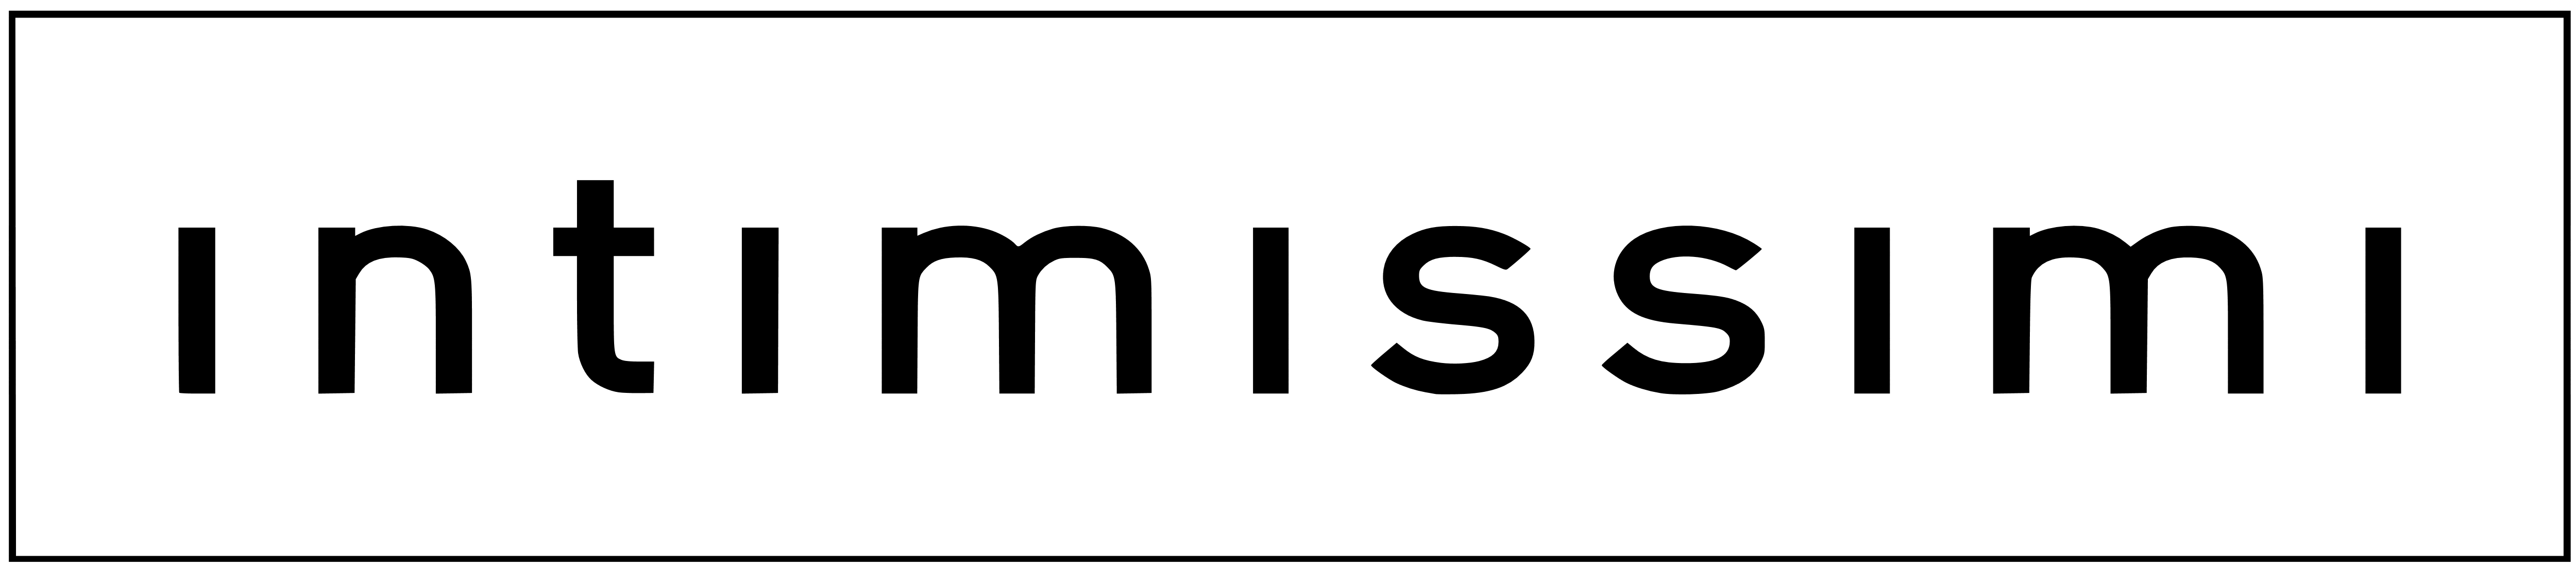 Intimissimi logo, logotype, wordmark